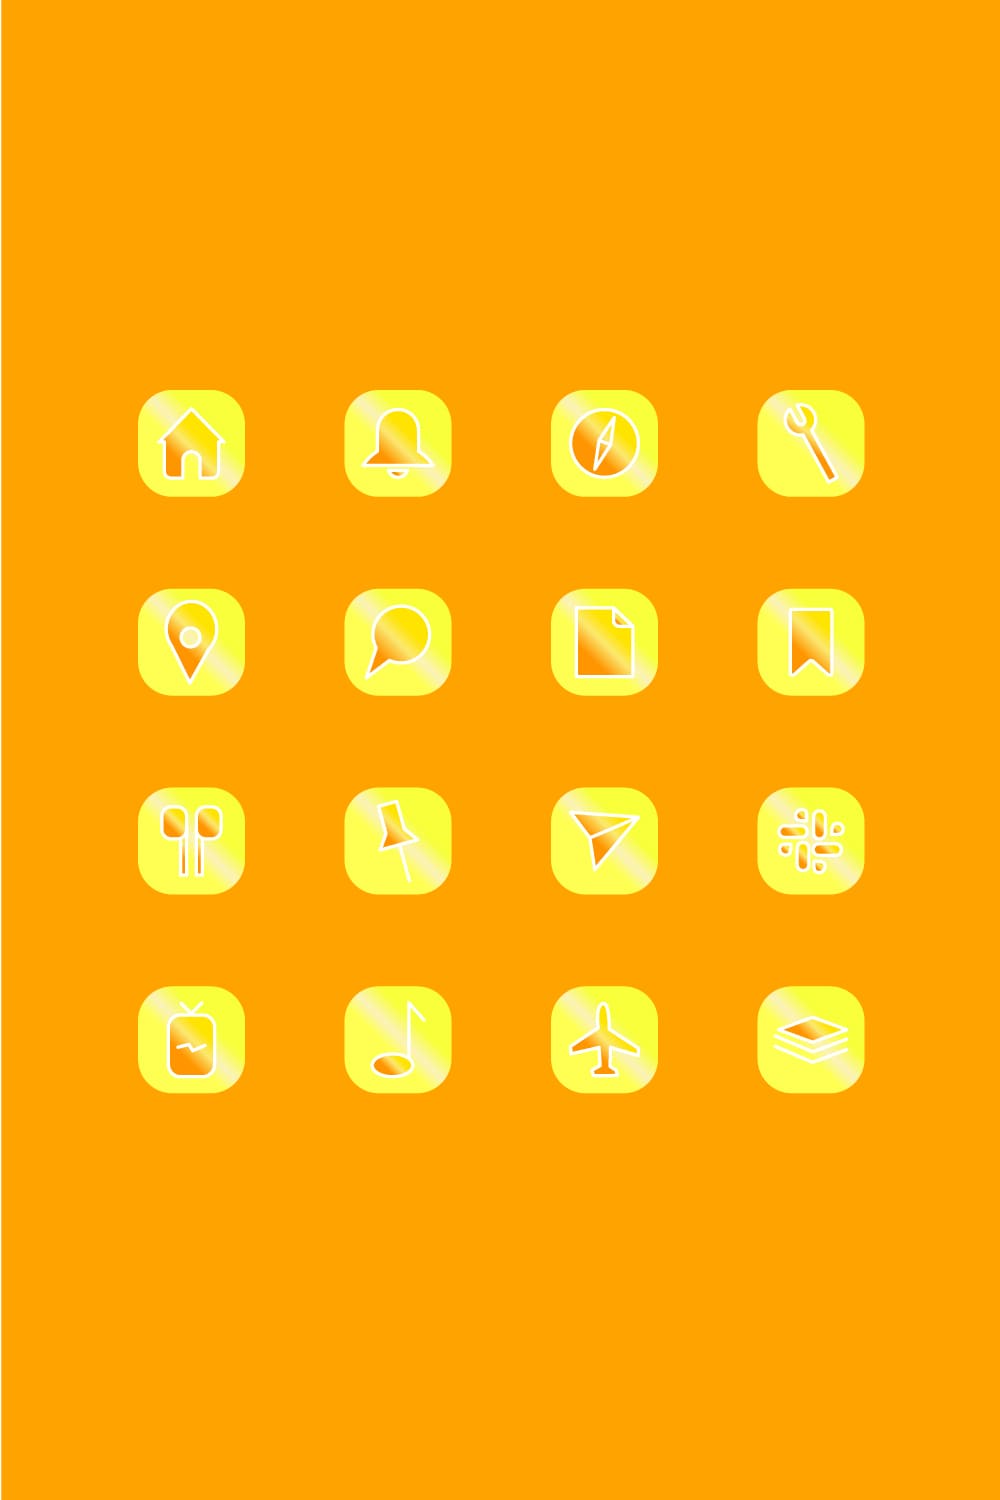 Yellow App Icons Aesthetic Pinterest.